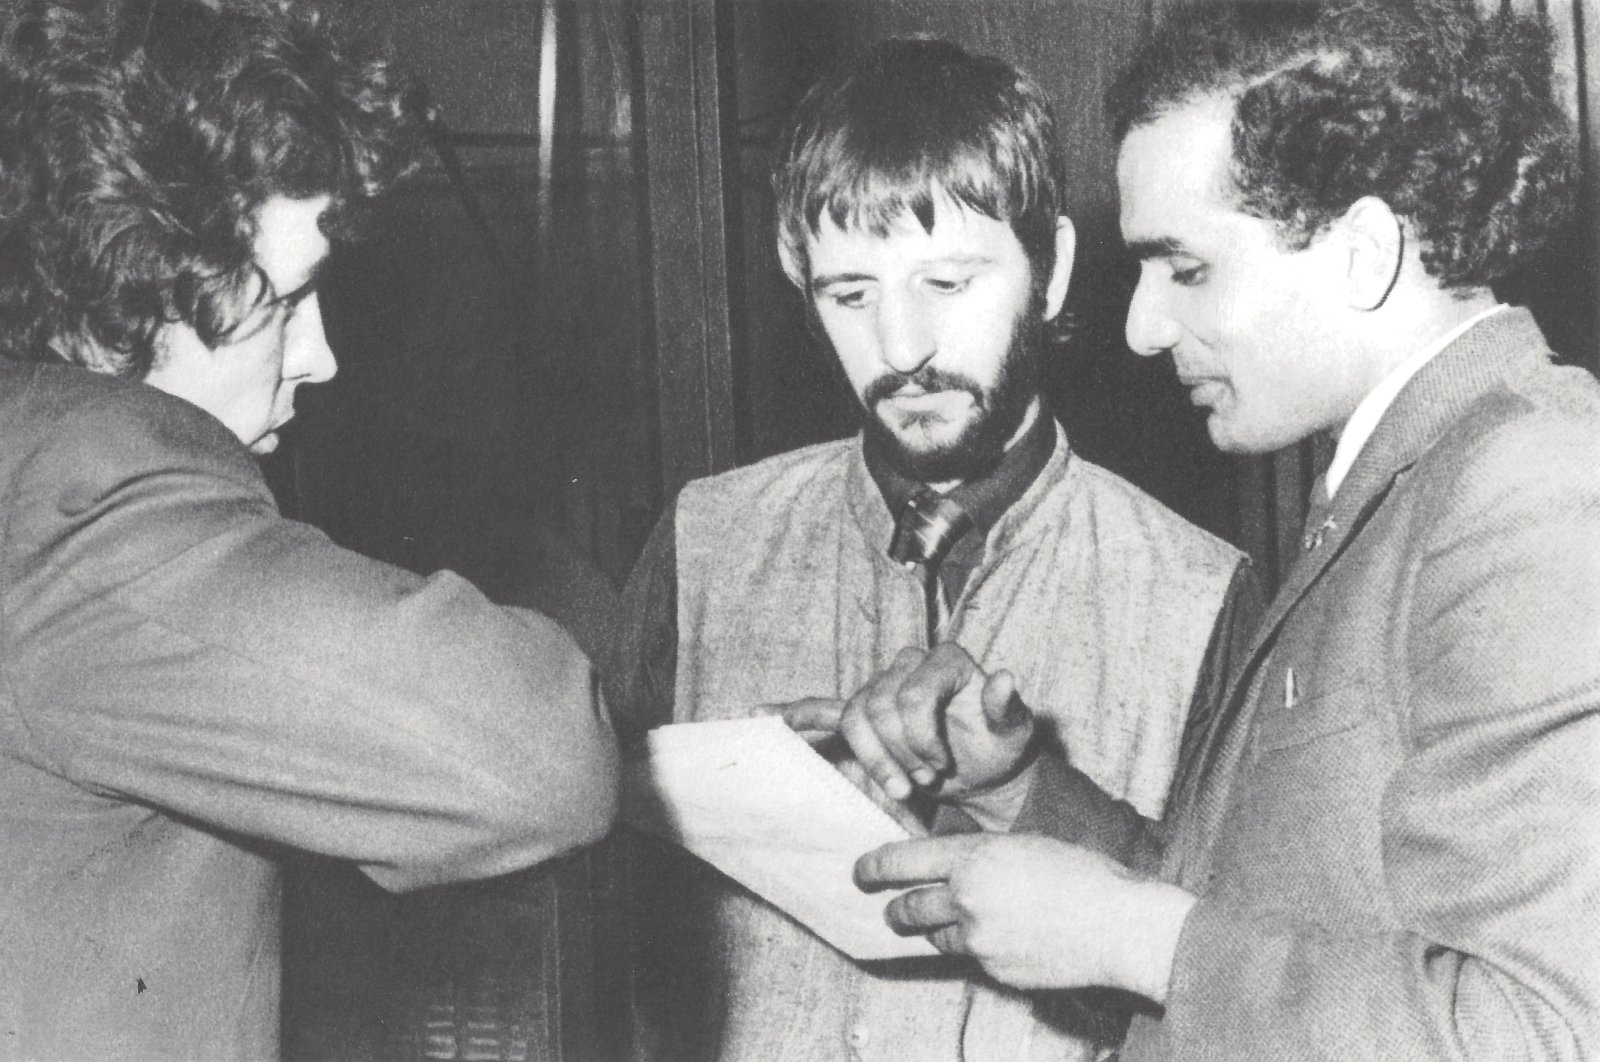 Museum Beatles mengungkap lagu yang belum pernah didengar sebelumnya ditemukan di loteng